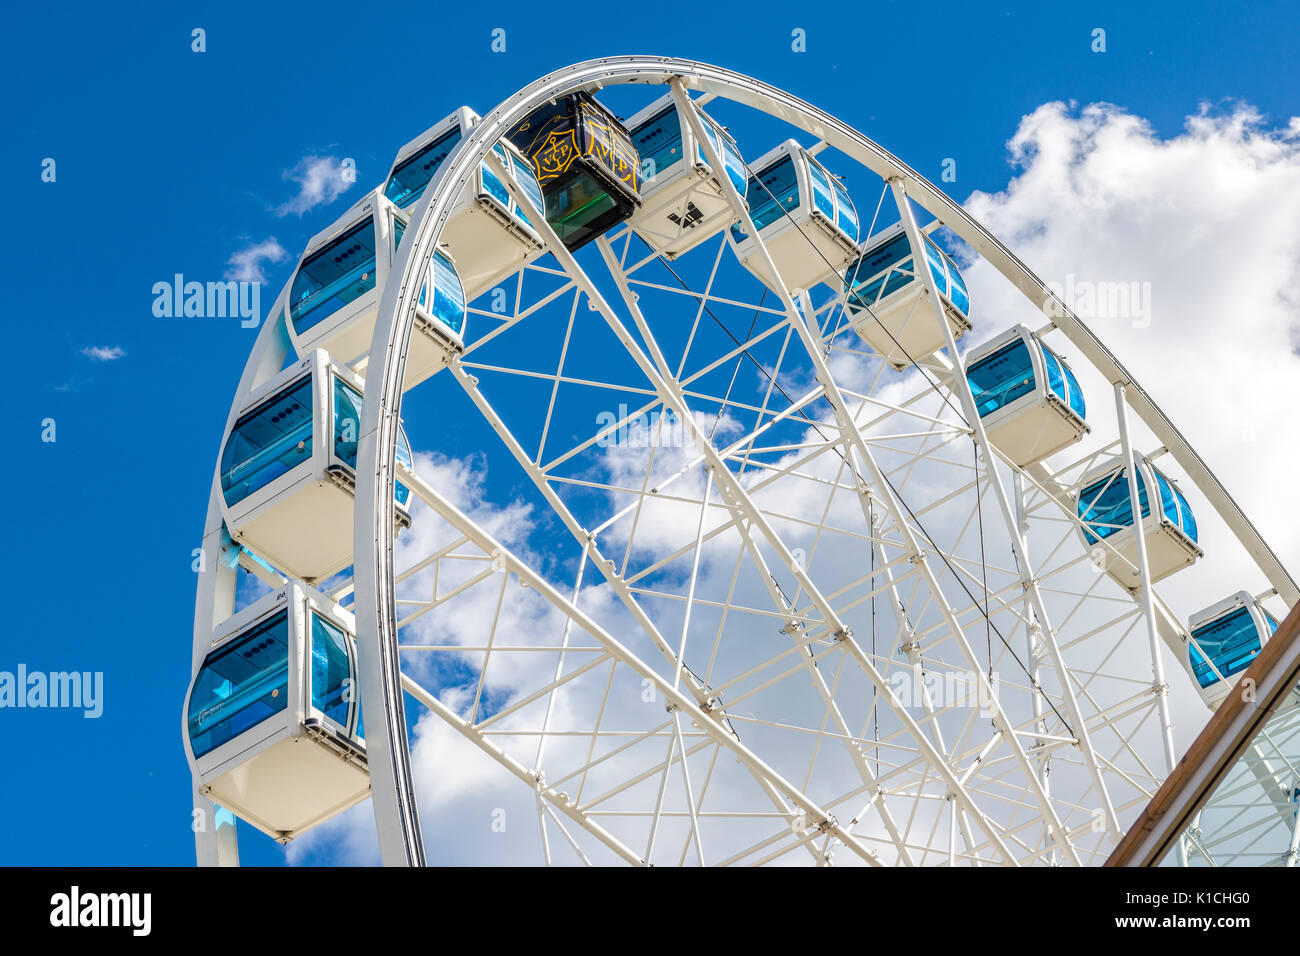 Ferris wheel in Helsinki, Finland Stock Photo